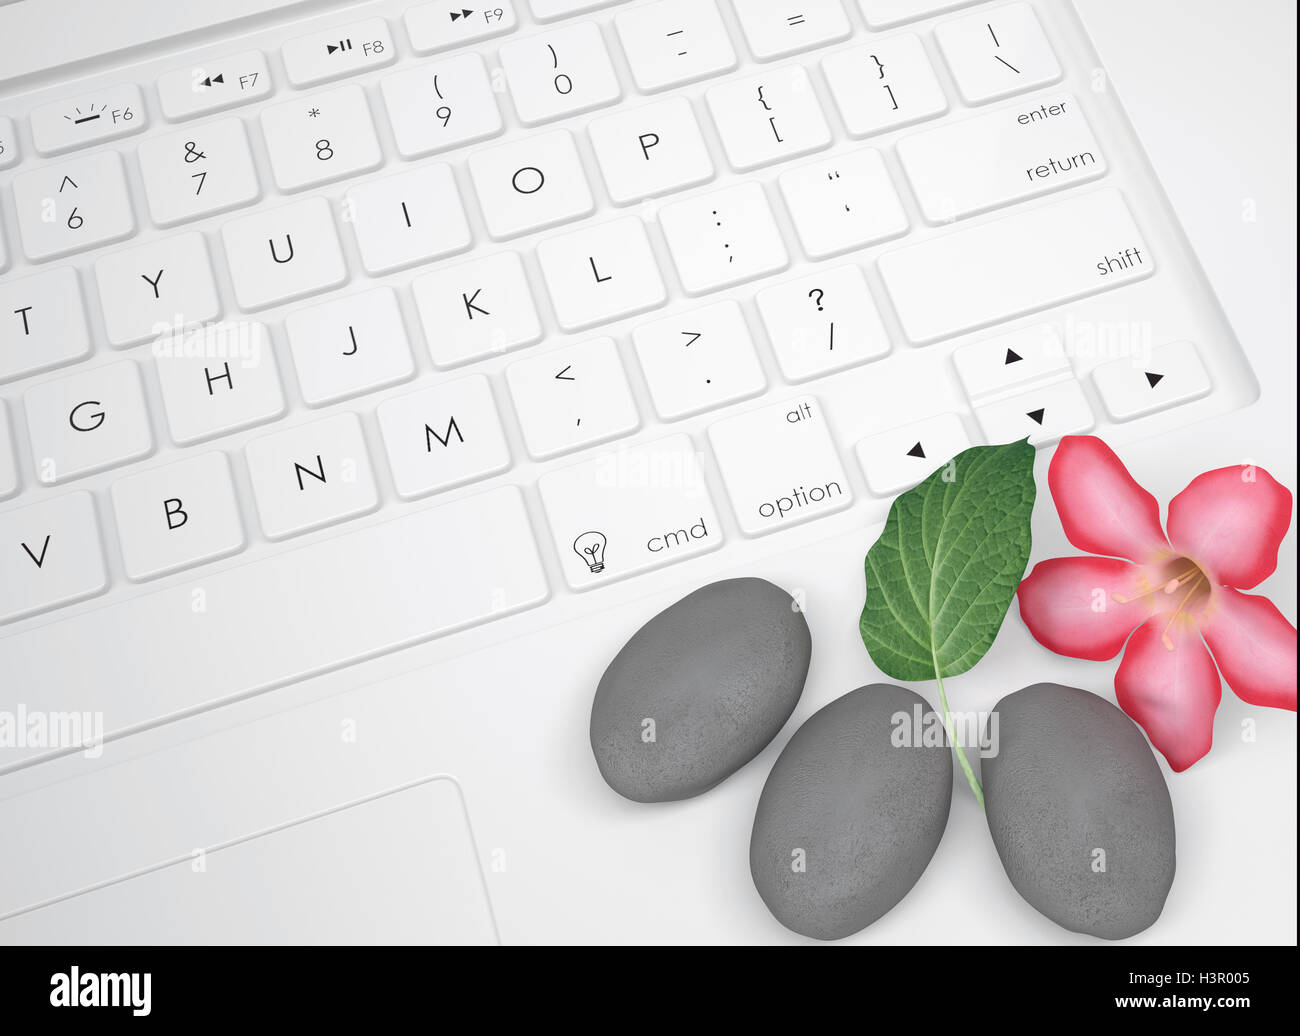 Blume, Blatt und Stein für massage auf der Tastatur Stockfoto